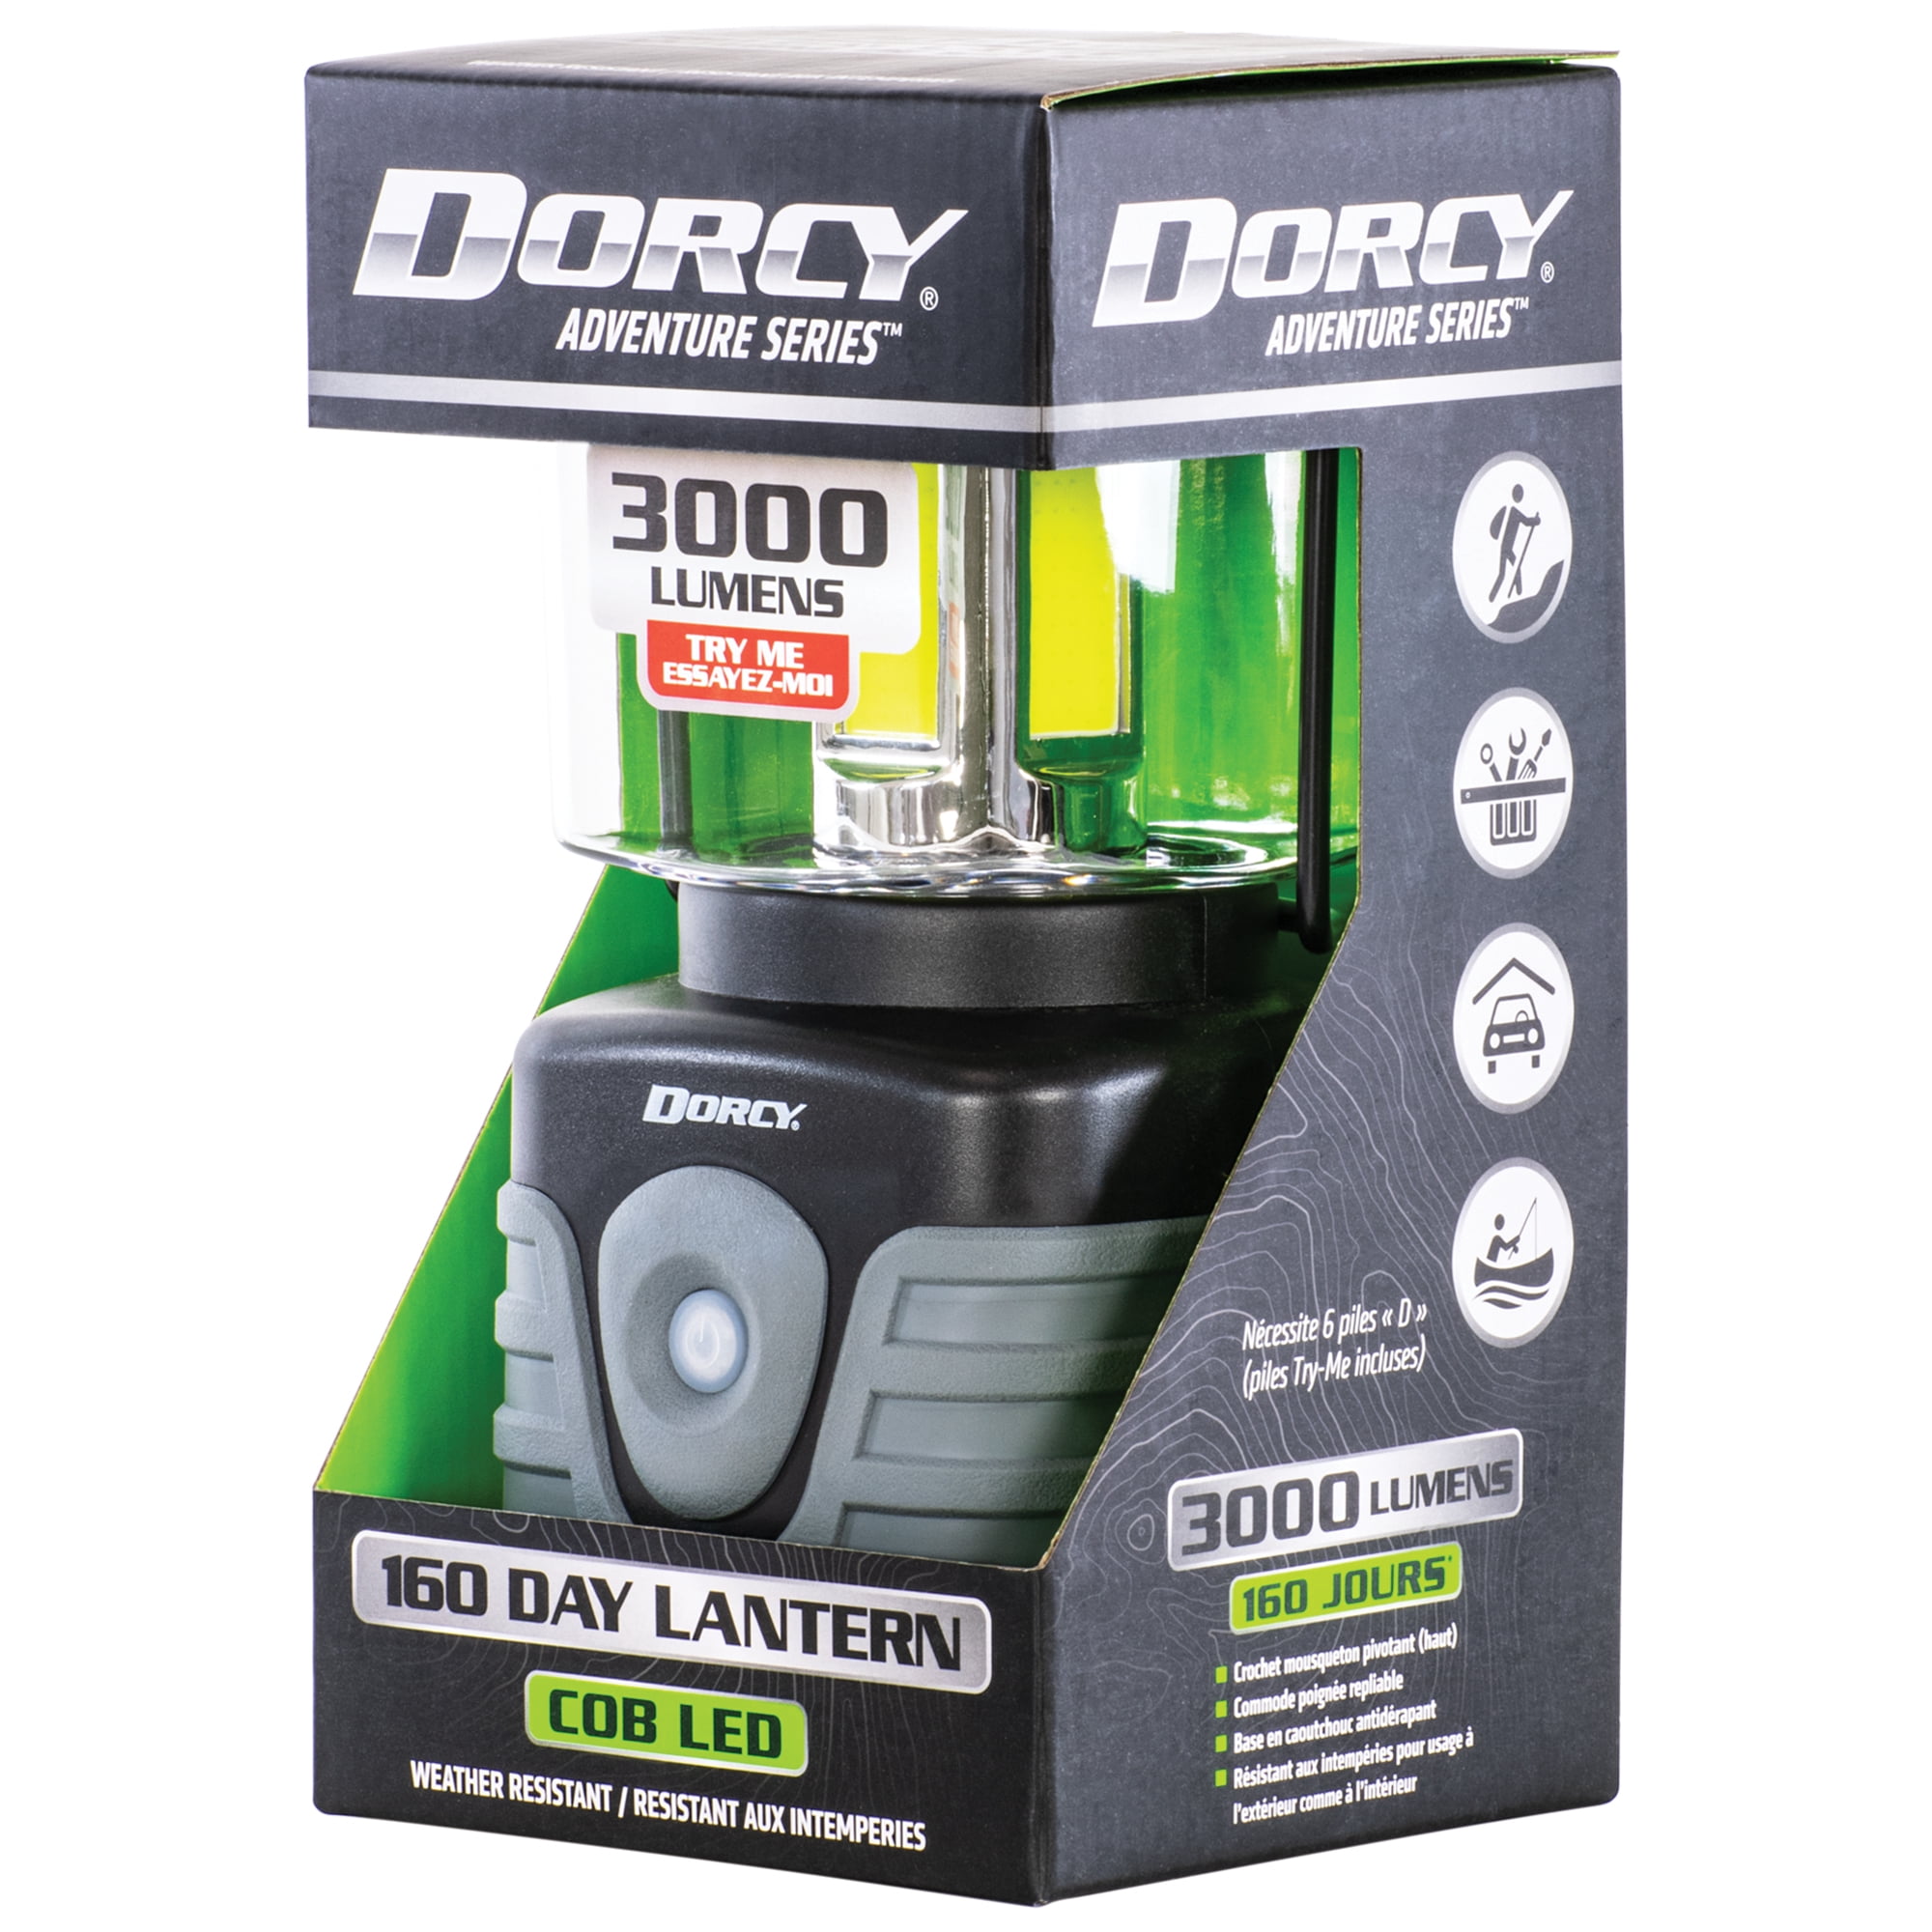 Dorcy 3000 Lumen Adventure Lantern